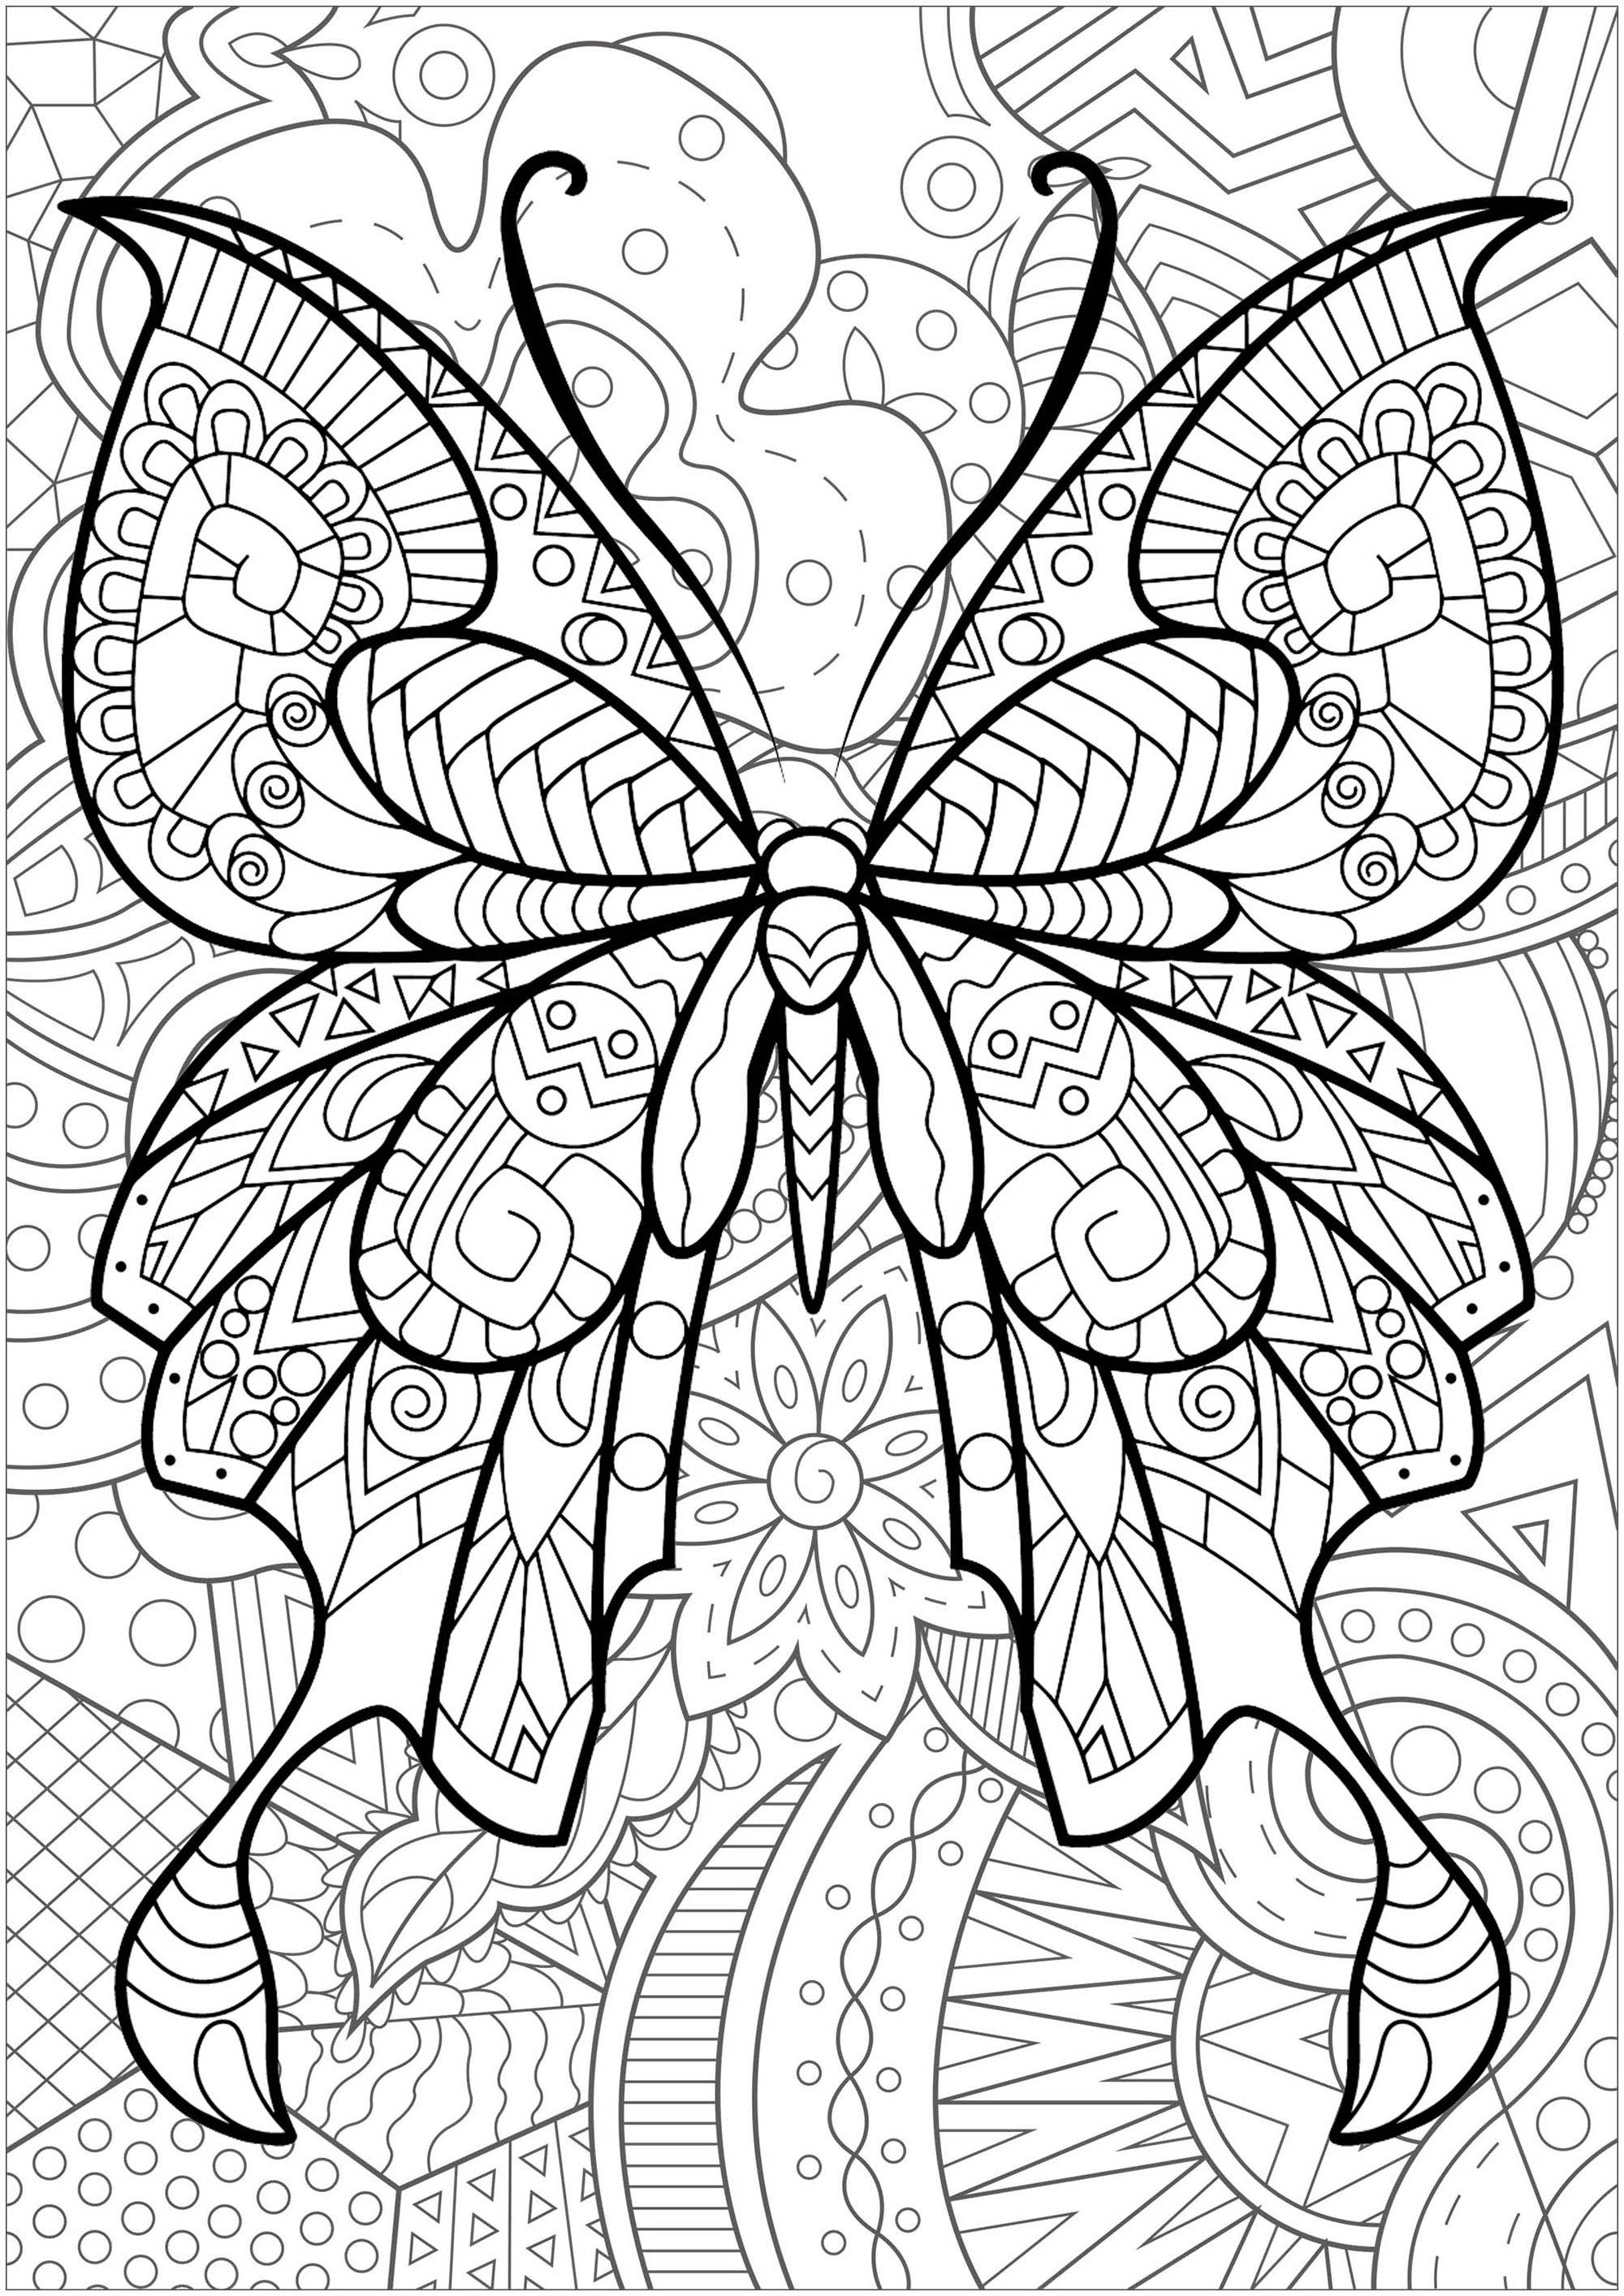 Schmetterling mit Mustern im Inneren und prächtigem geblümten Hintergrund - 2, Künstler : Art'Isabelle